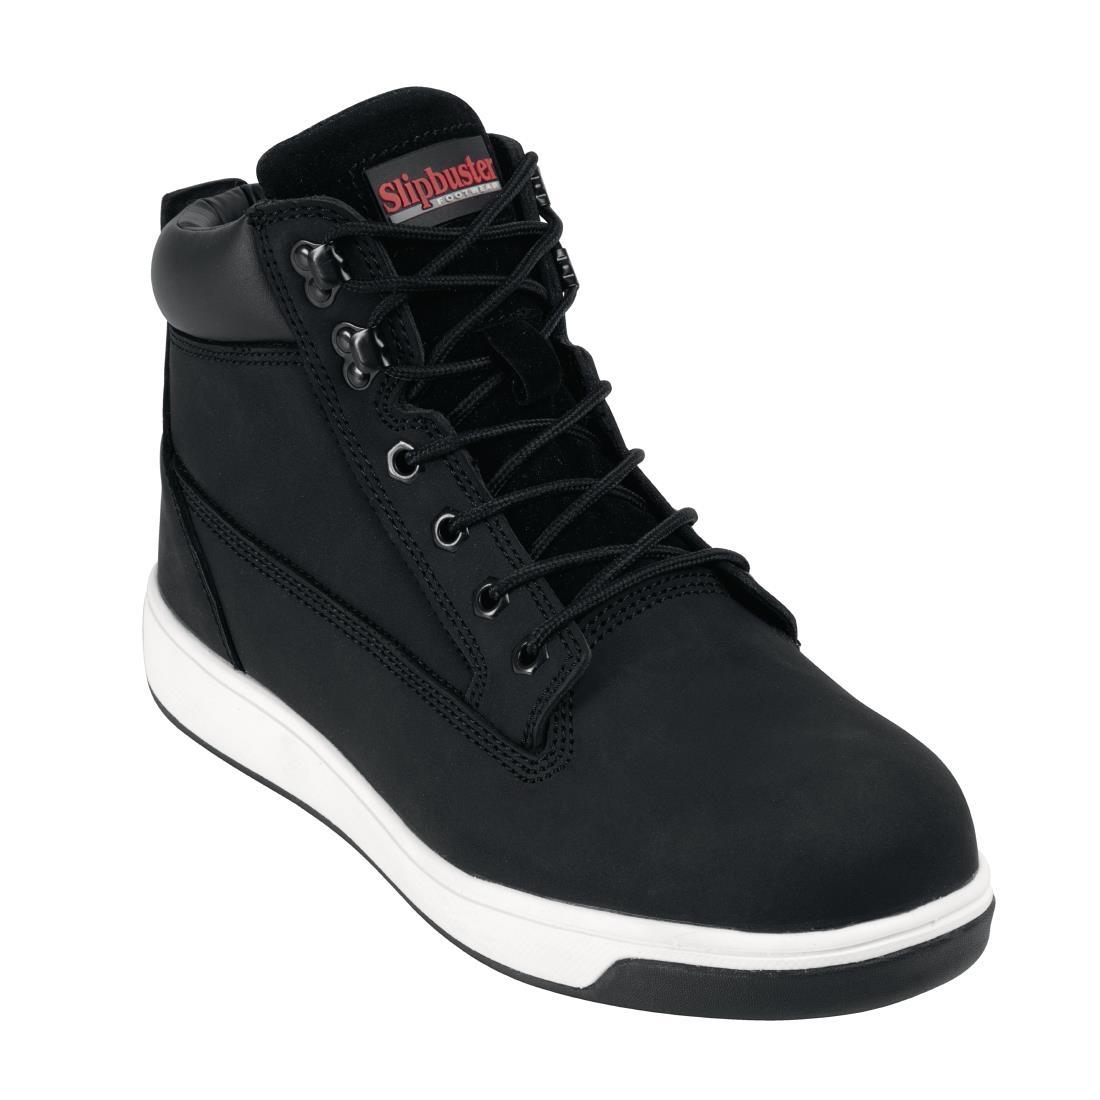 Slipbuster Sneaker Boots Black 43 - BB422-43  - 1